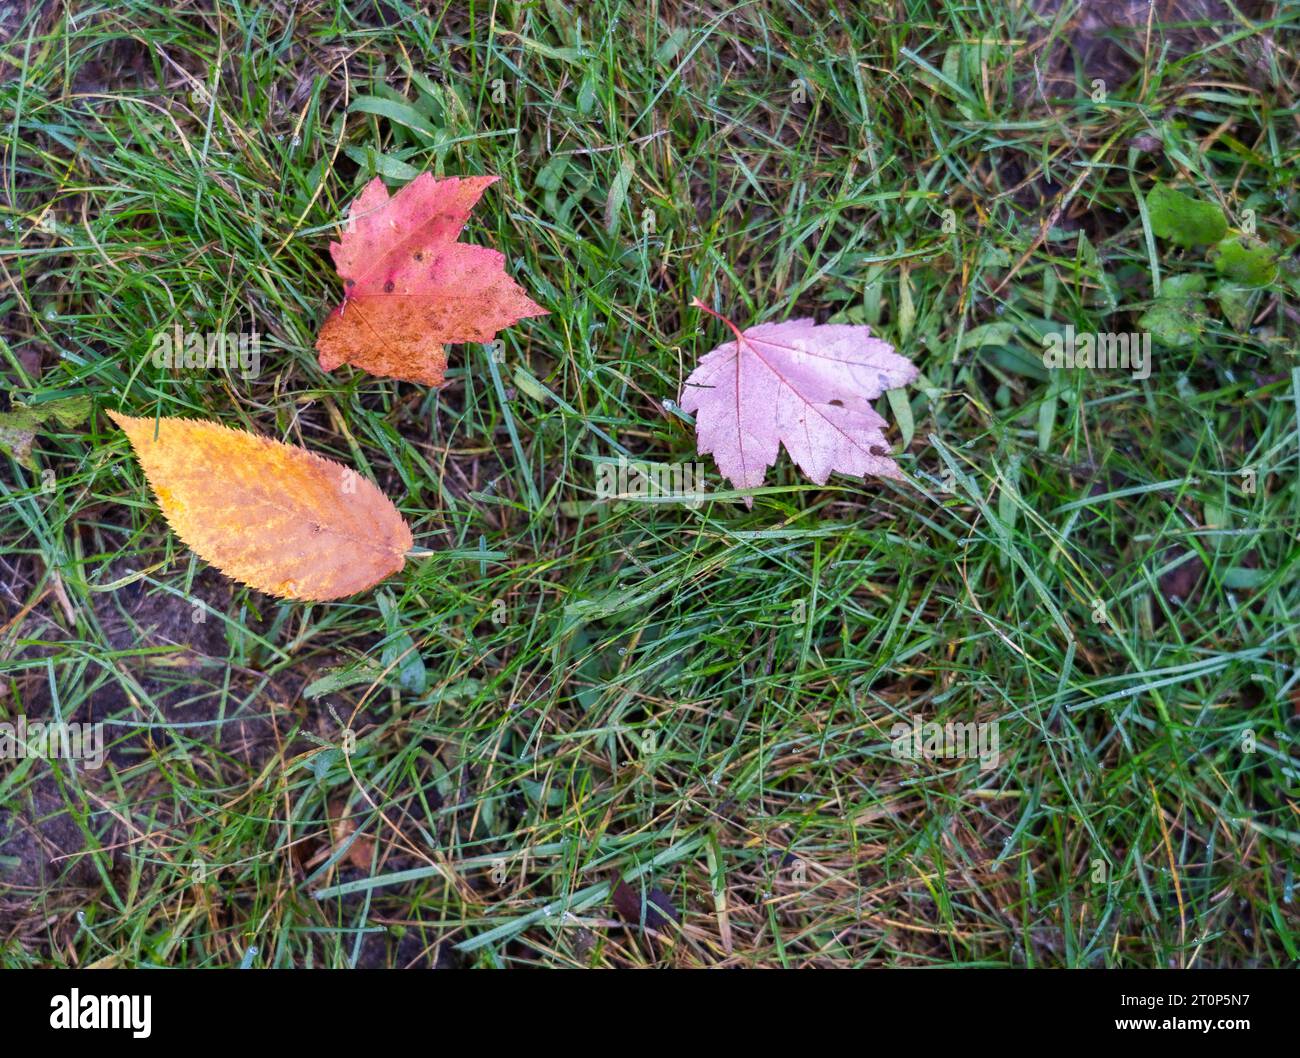 Tre foglie colorate cadute in autunno riposano su un terreno erboso. Le foglie di betulla e acero sono colorate con motivi unici. Foto Stock